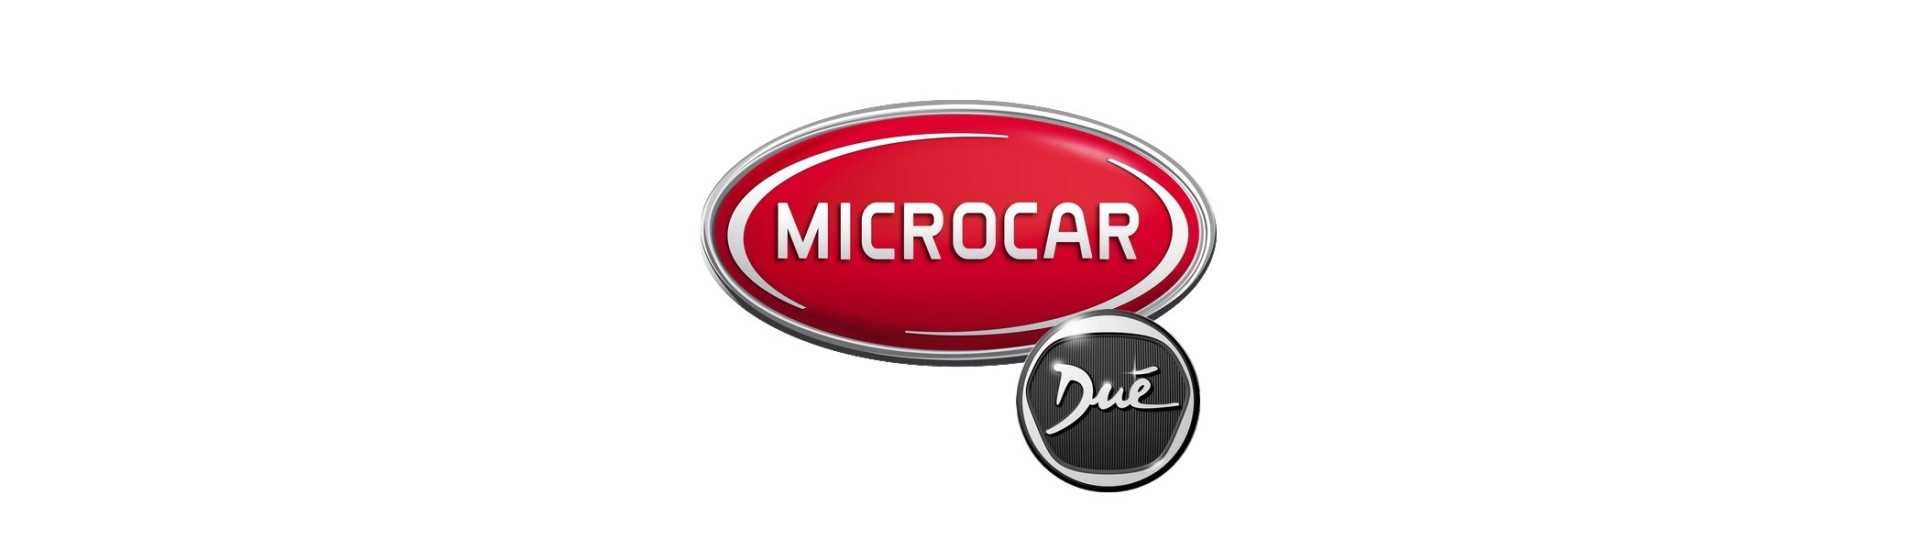 Moyeu + disco freno miglior prezzo auto senza patente Microcar Dué